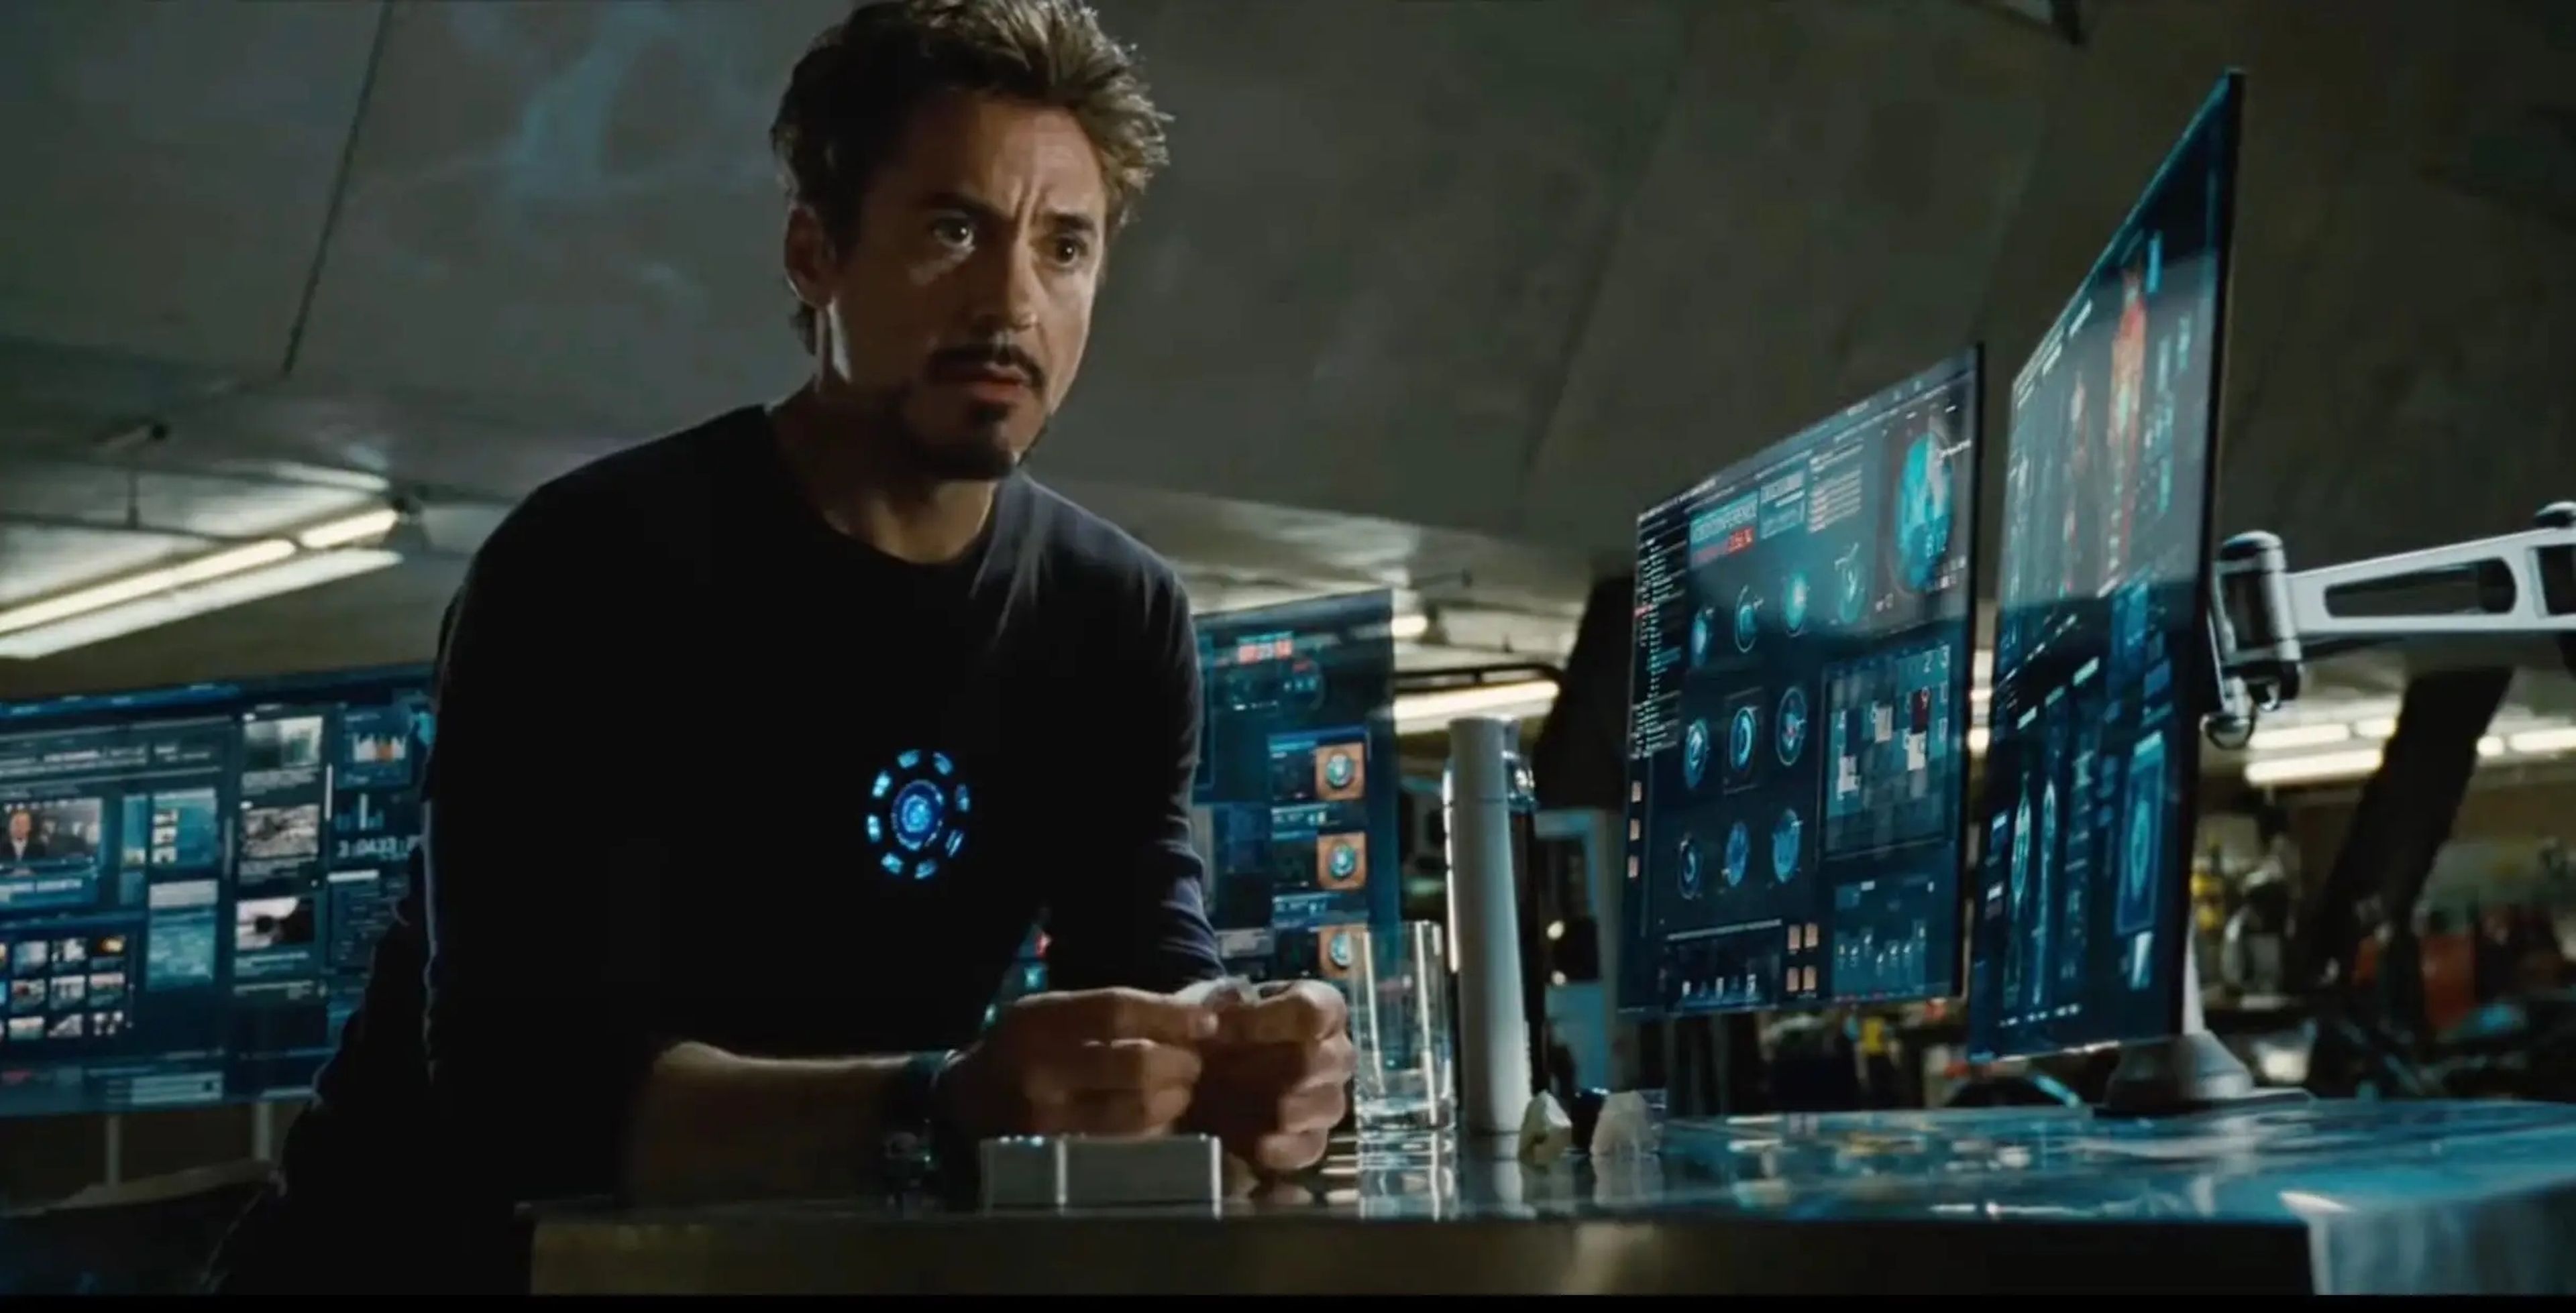 Tony Stark dependía en buena medida de Jarvis, su asistente de inteligencia artificial, para diversas tareas.